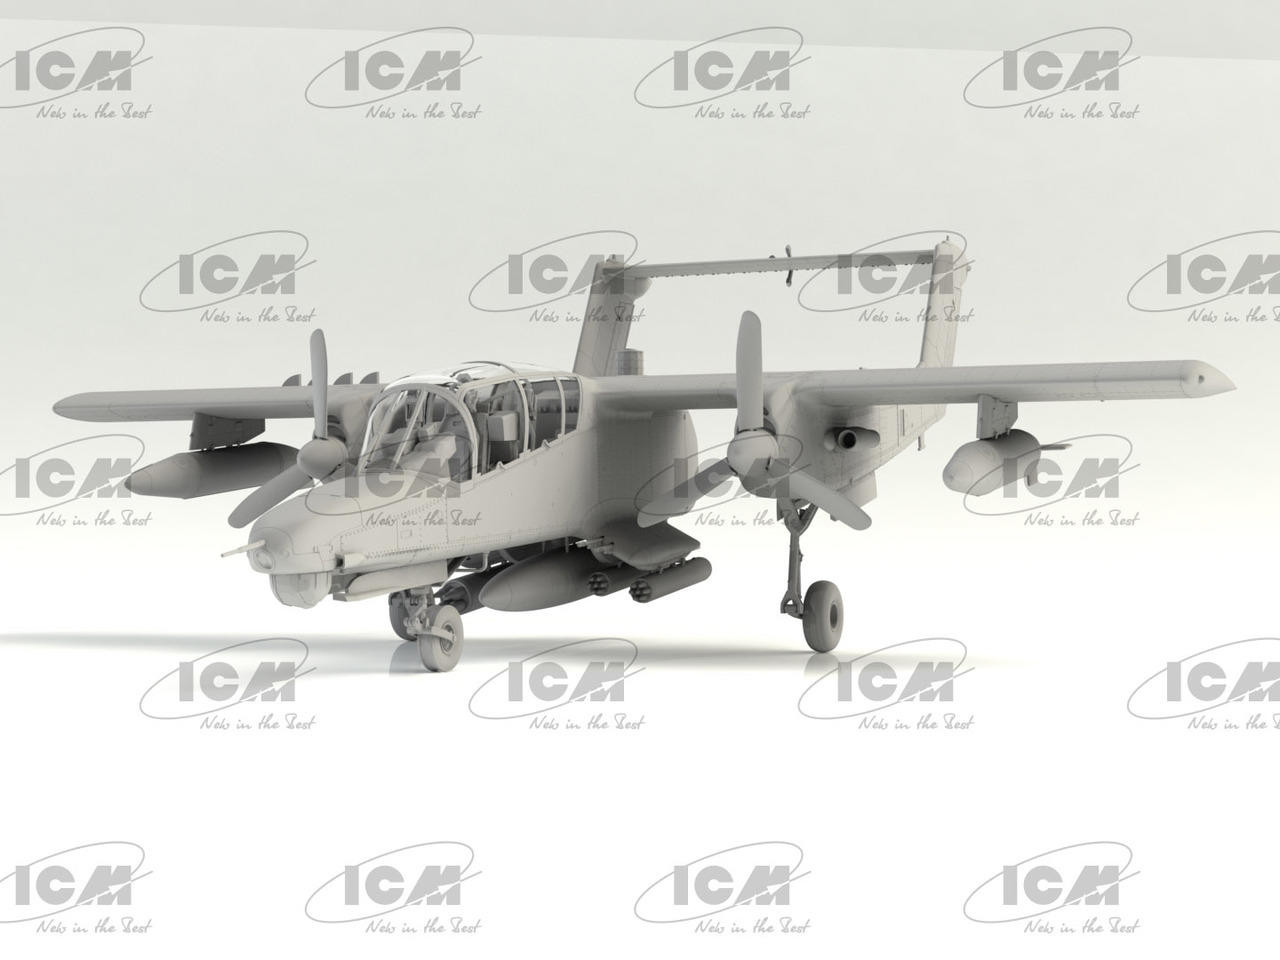 1/48 ICM OV-10D+ Bronco US Attack Aircraft - FreeTimeHobbies.com